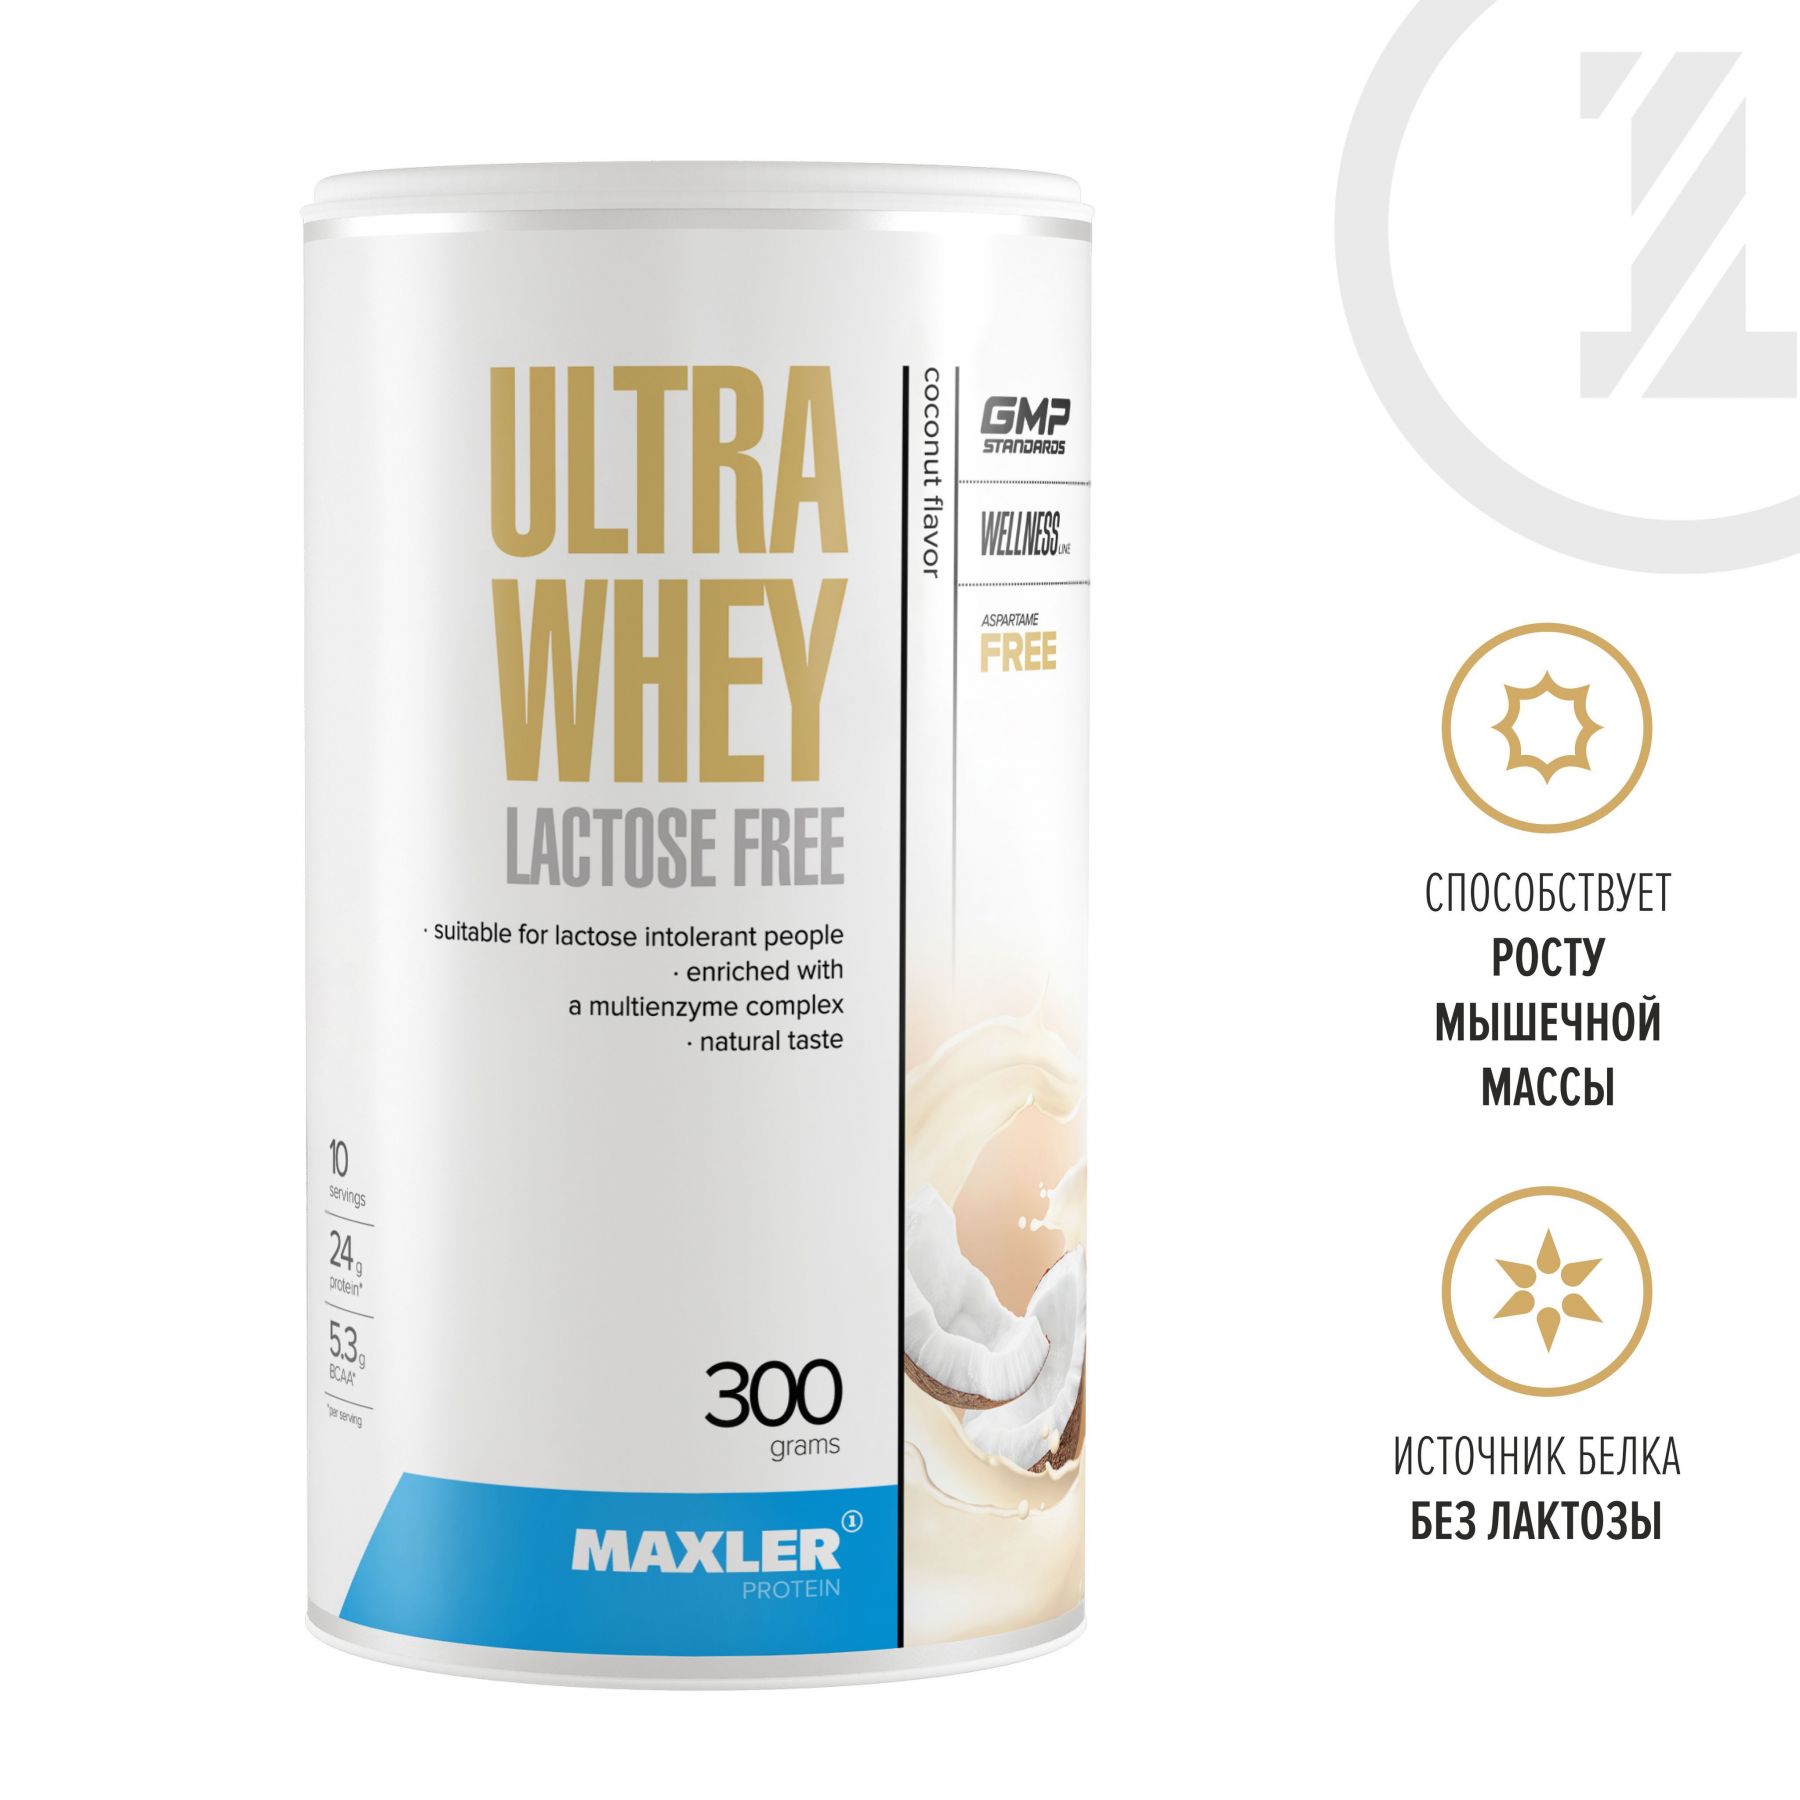 Maxler - Ultra Whey Lactose Free 300 g (can)